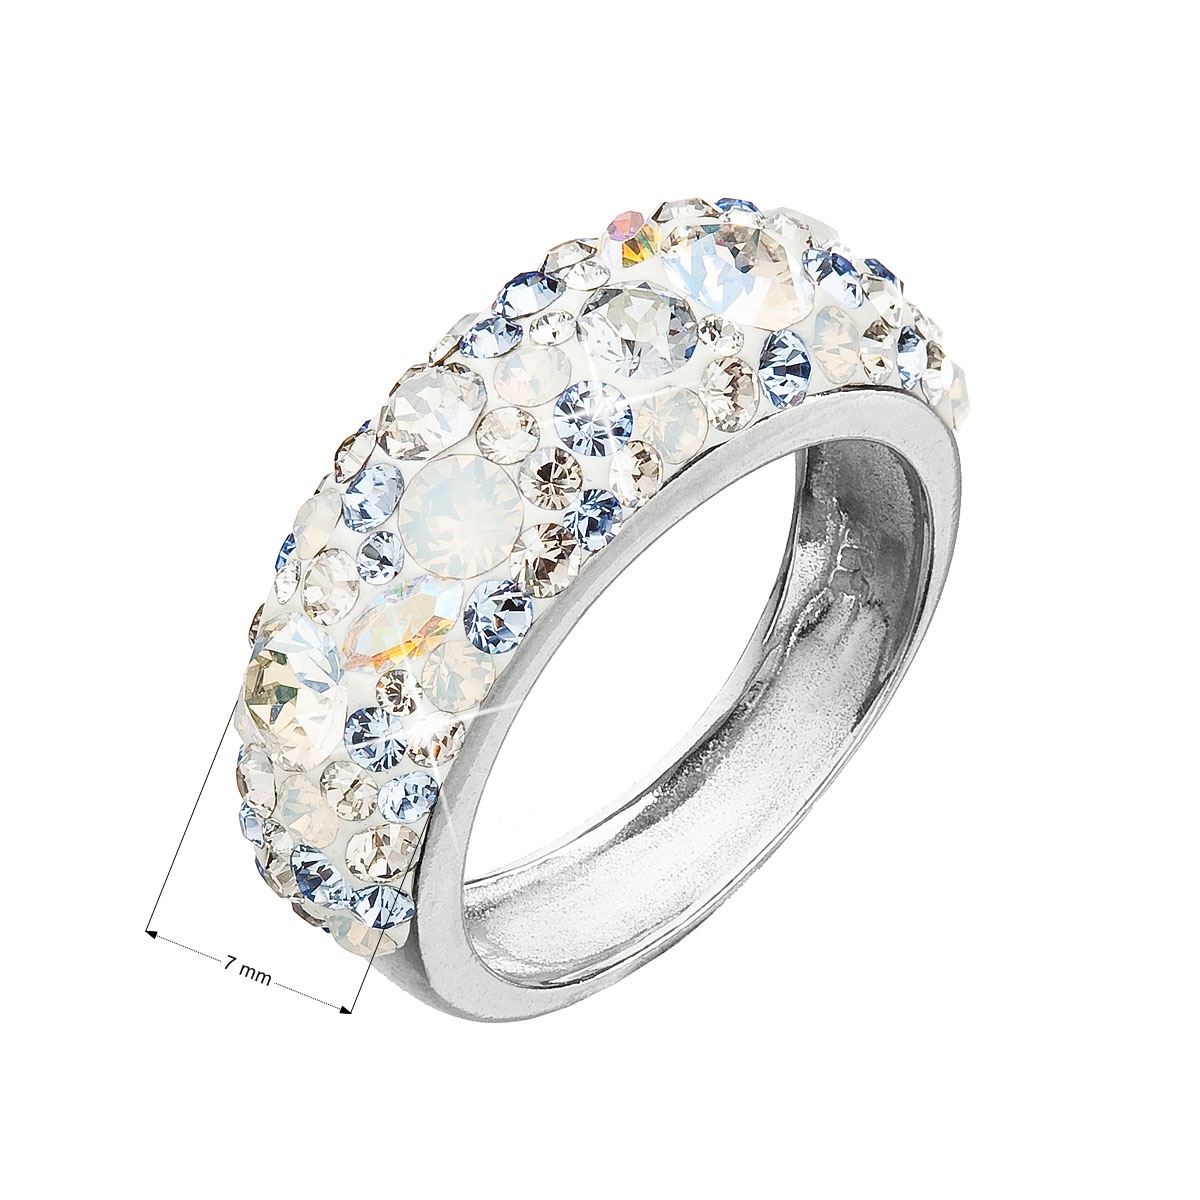 Strieborný prsteň s kryštálmi Swarovski Light Sapphire